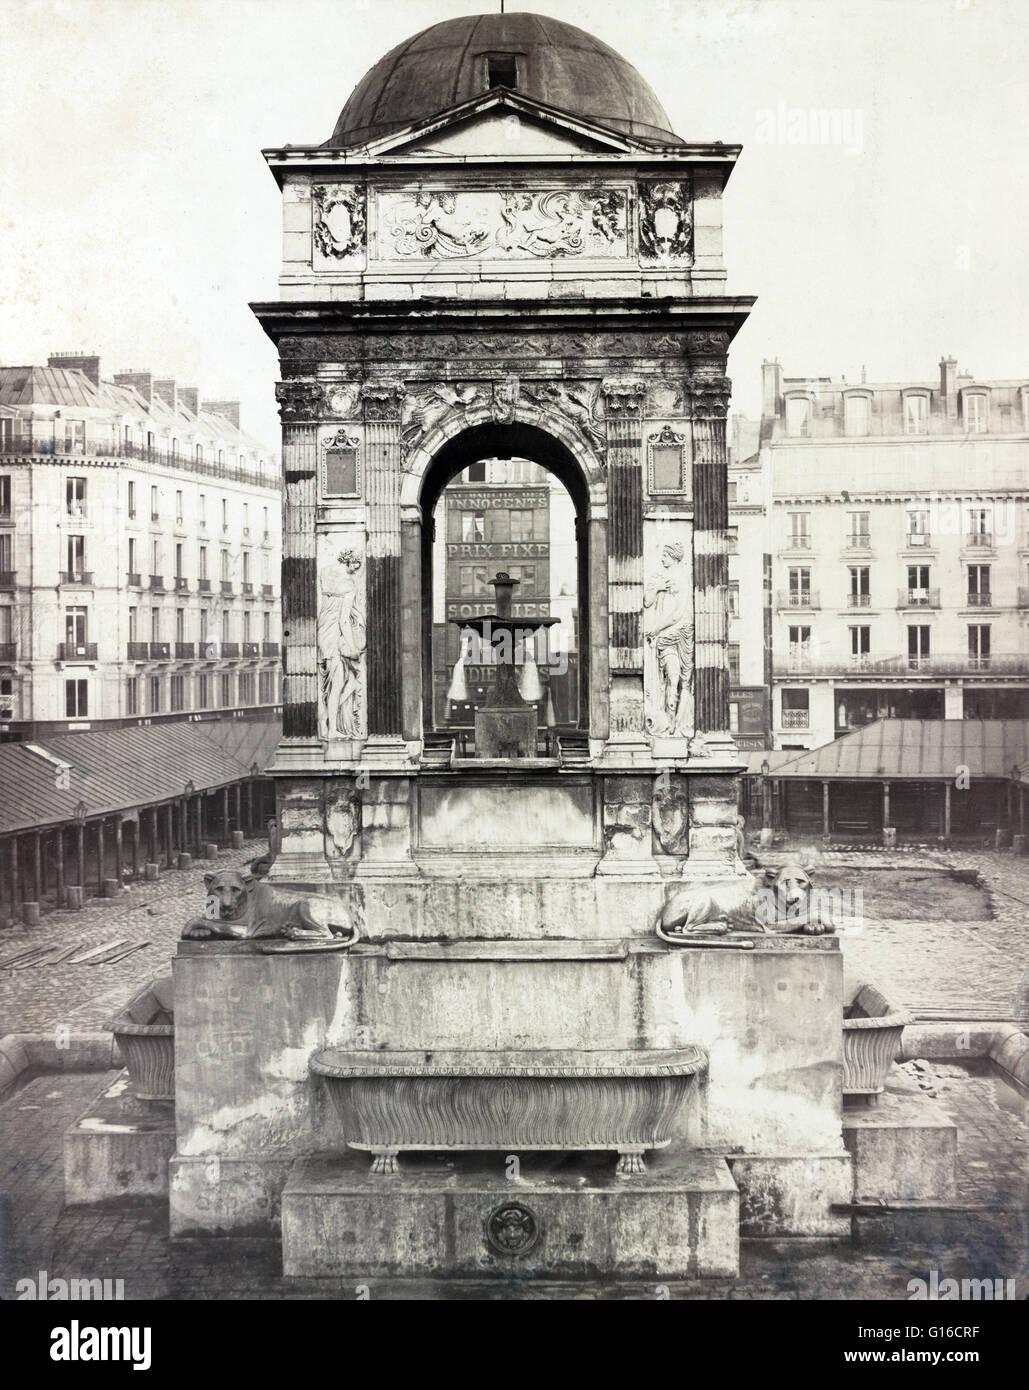 Die Fontaine des Innocents wie bei Marché des Innocents in Paris, kurz vor einem seiner mehrere Umzüge und Rekonstruktionen installiert. Fotografiert von Charles Marville, 1858. Ursprünglich hieß den Brunnen der Nymphen, war es konstruierte betwee Stockfoto